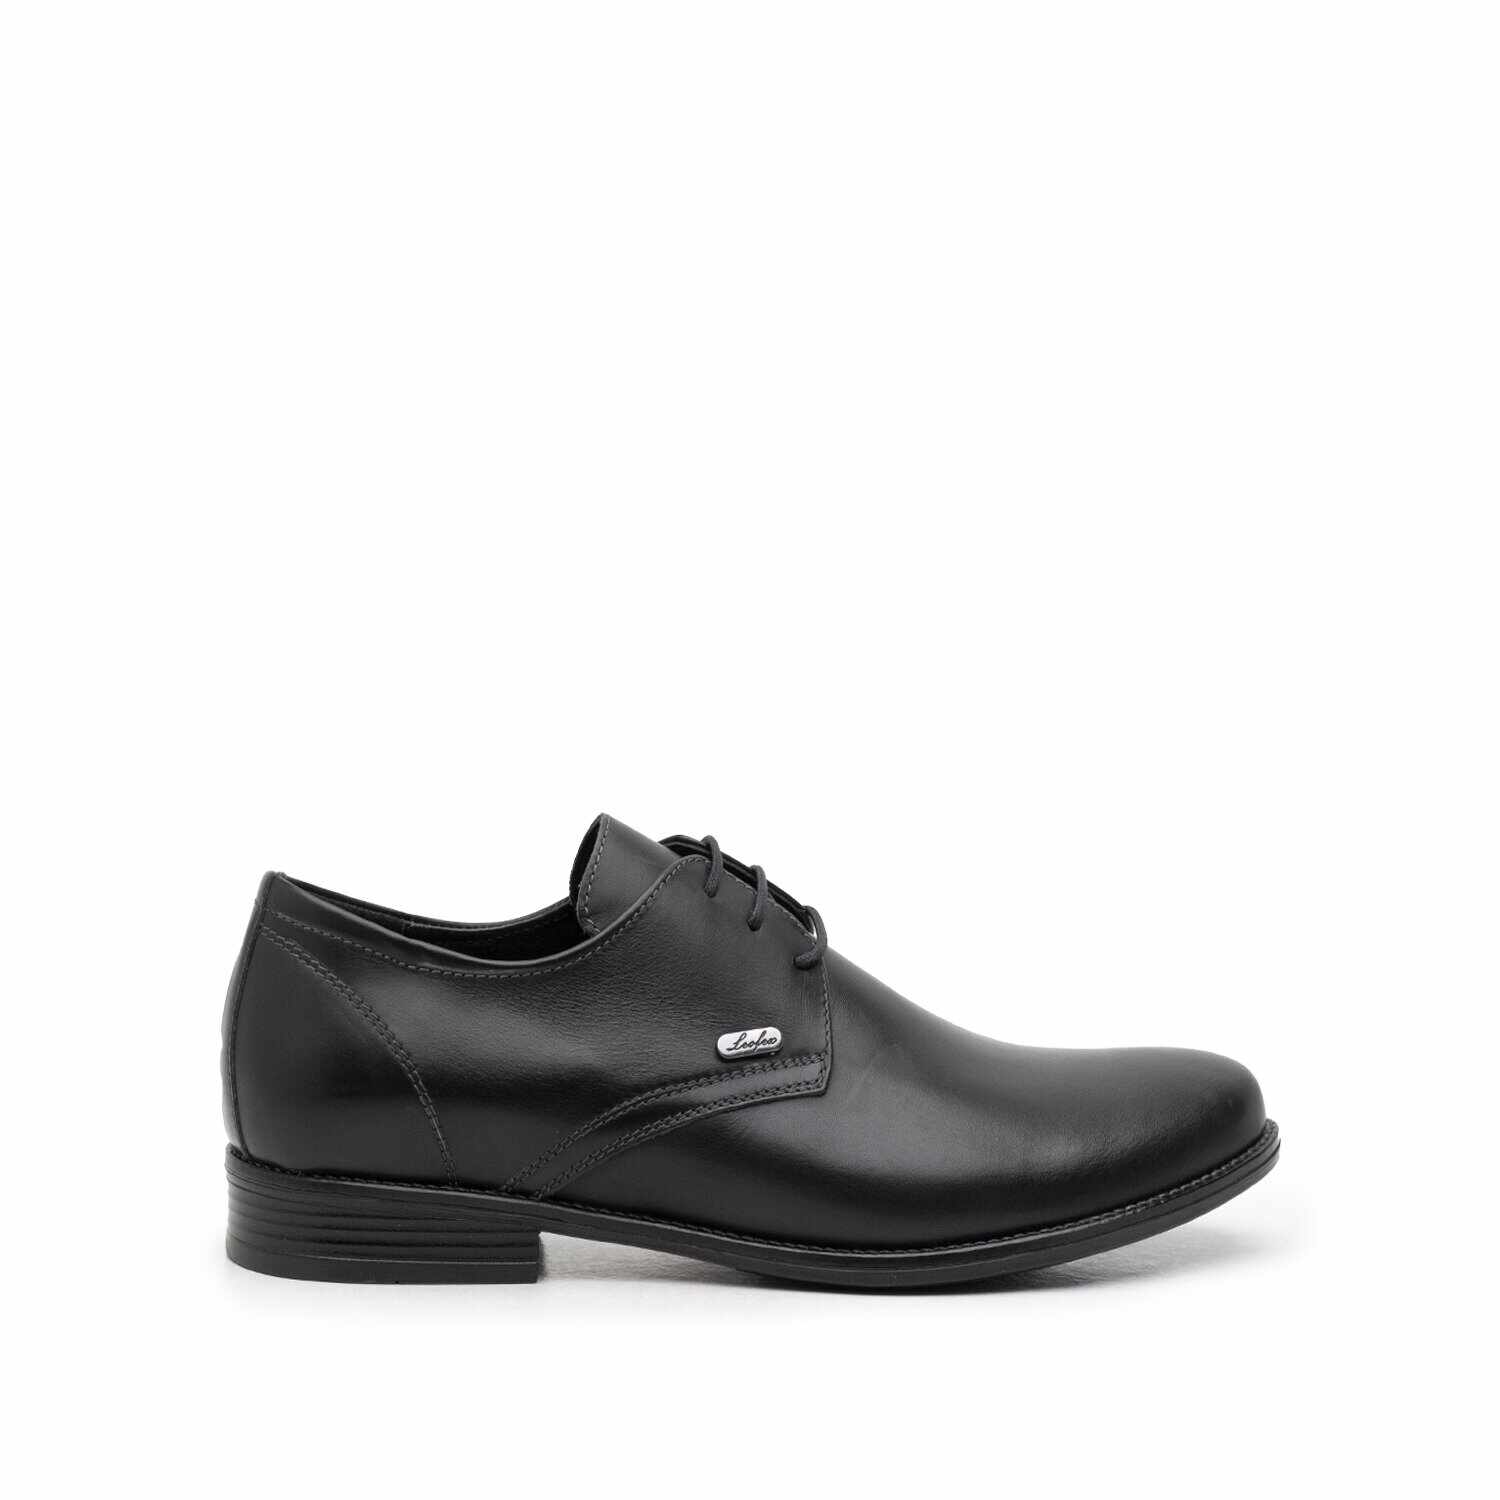 Pantofi casual barbati din piele naturala, Leofex - 578 negru box